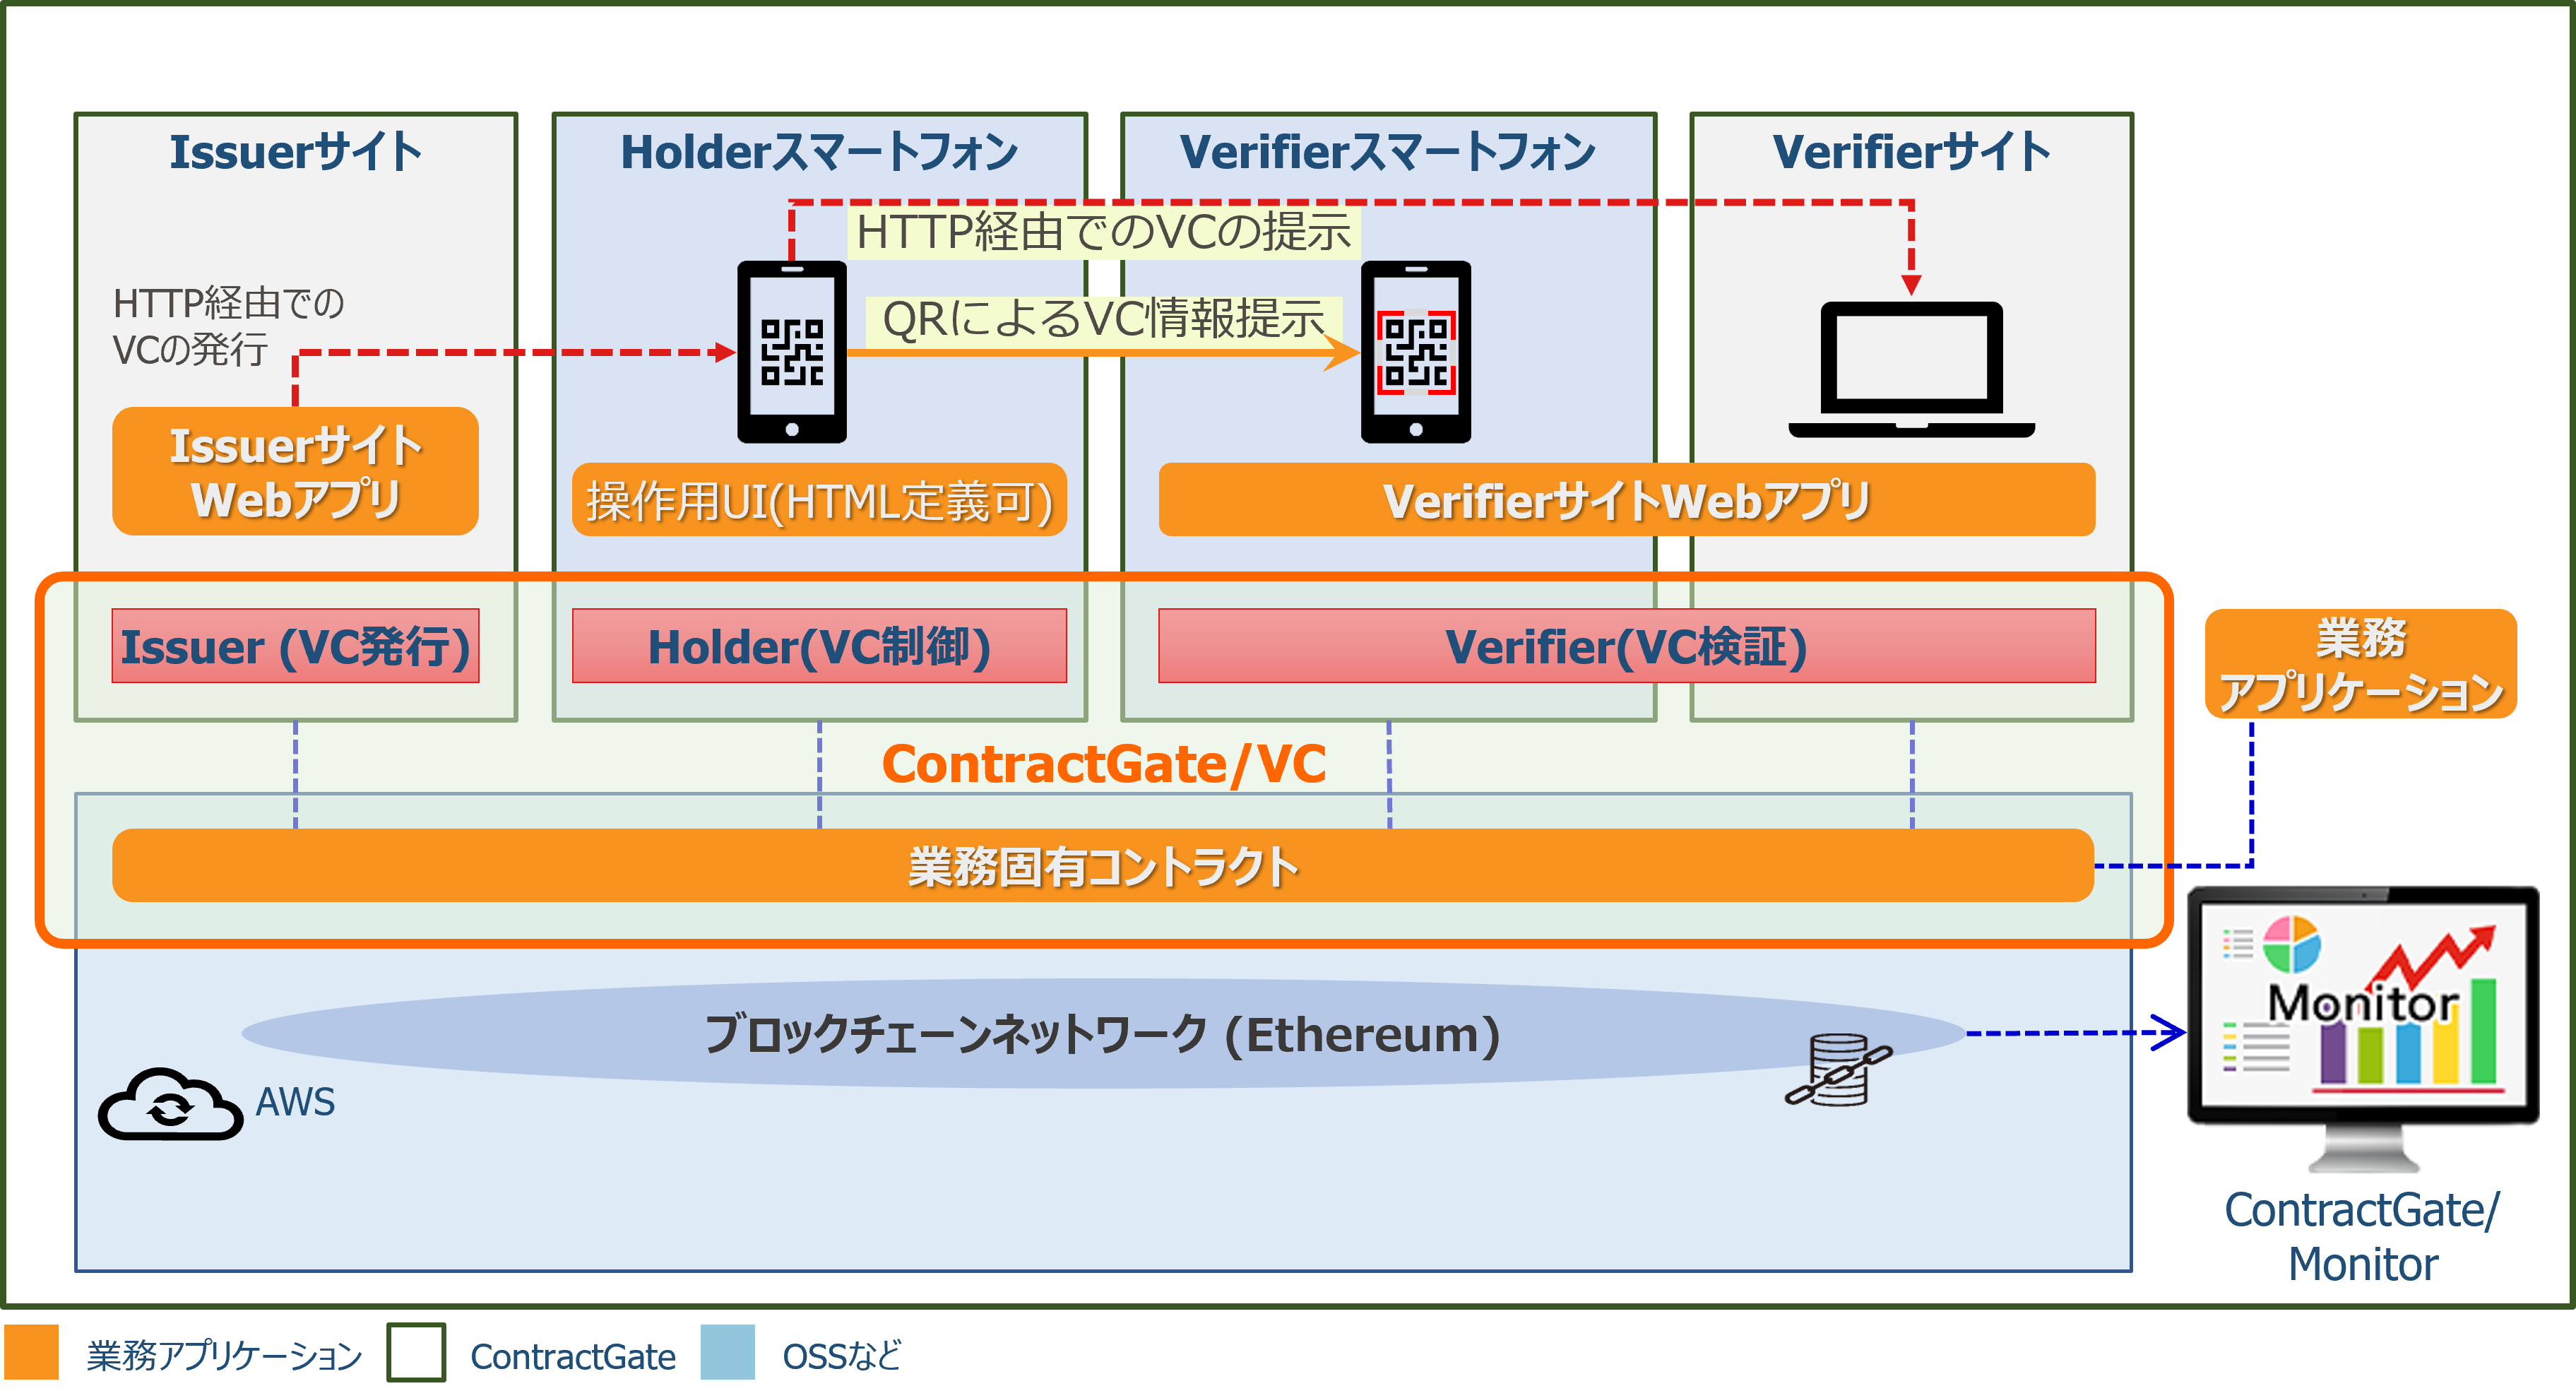 ContractGate PoC Service VC model